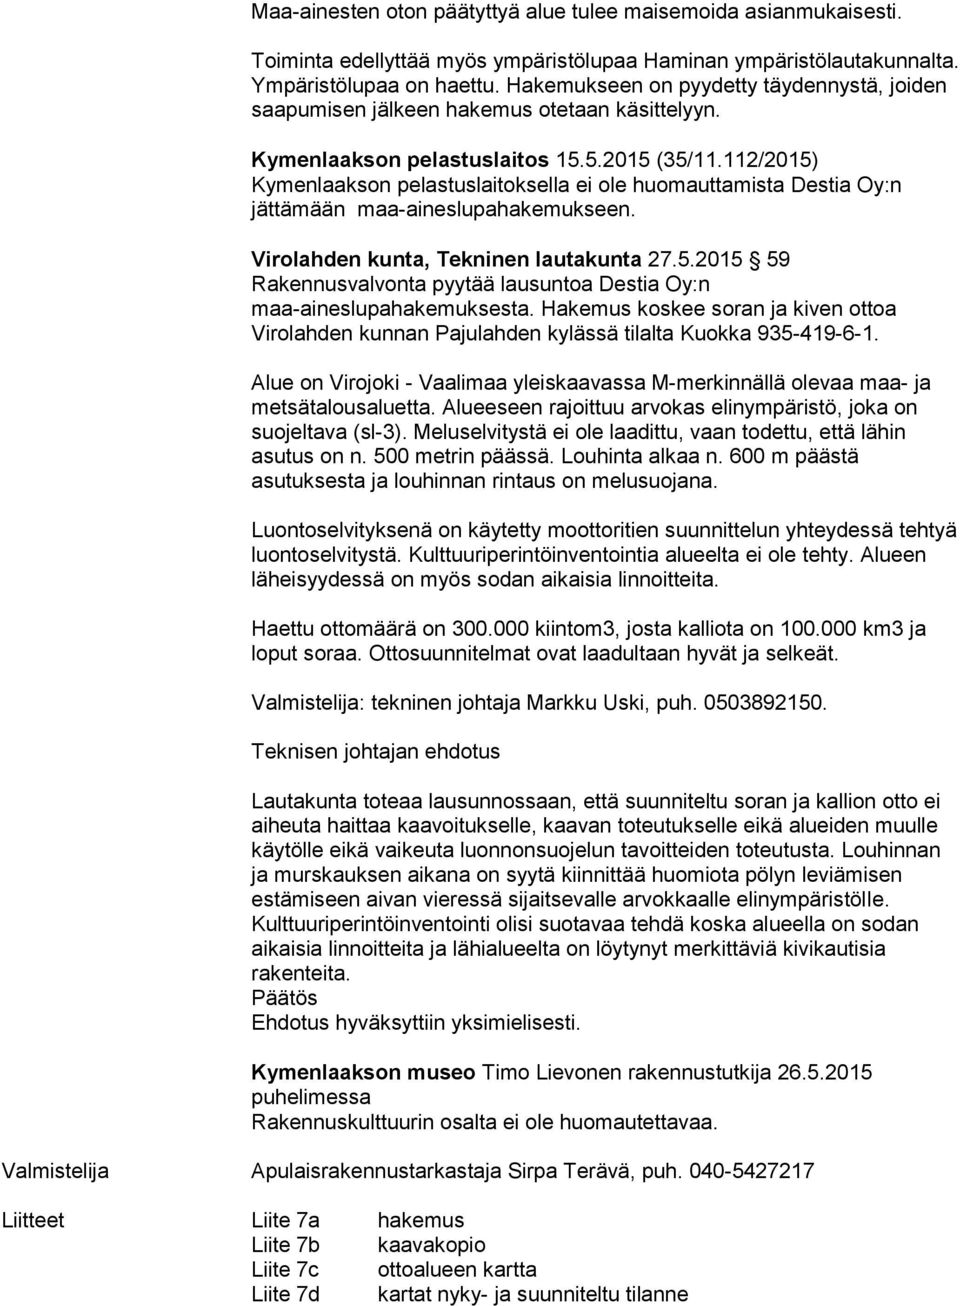 112/2015) Kymenlaakson pelastuslaitoksella ei ole huomauttamista Destia Oy:n jättämään maa-aineslupahakemukseen. Virolahden kunta, Tekninen lautakunta 27.5.2015 59 Rakennusvalvonta pyytää lausuntoa Destia Oy:n maa-aineslupahakemuksesta.